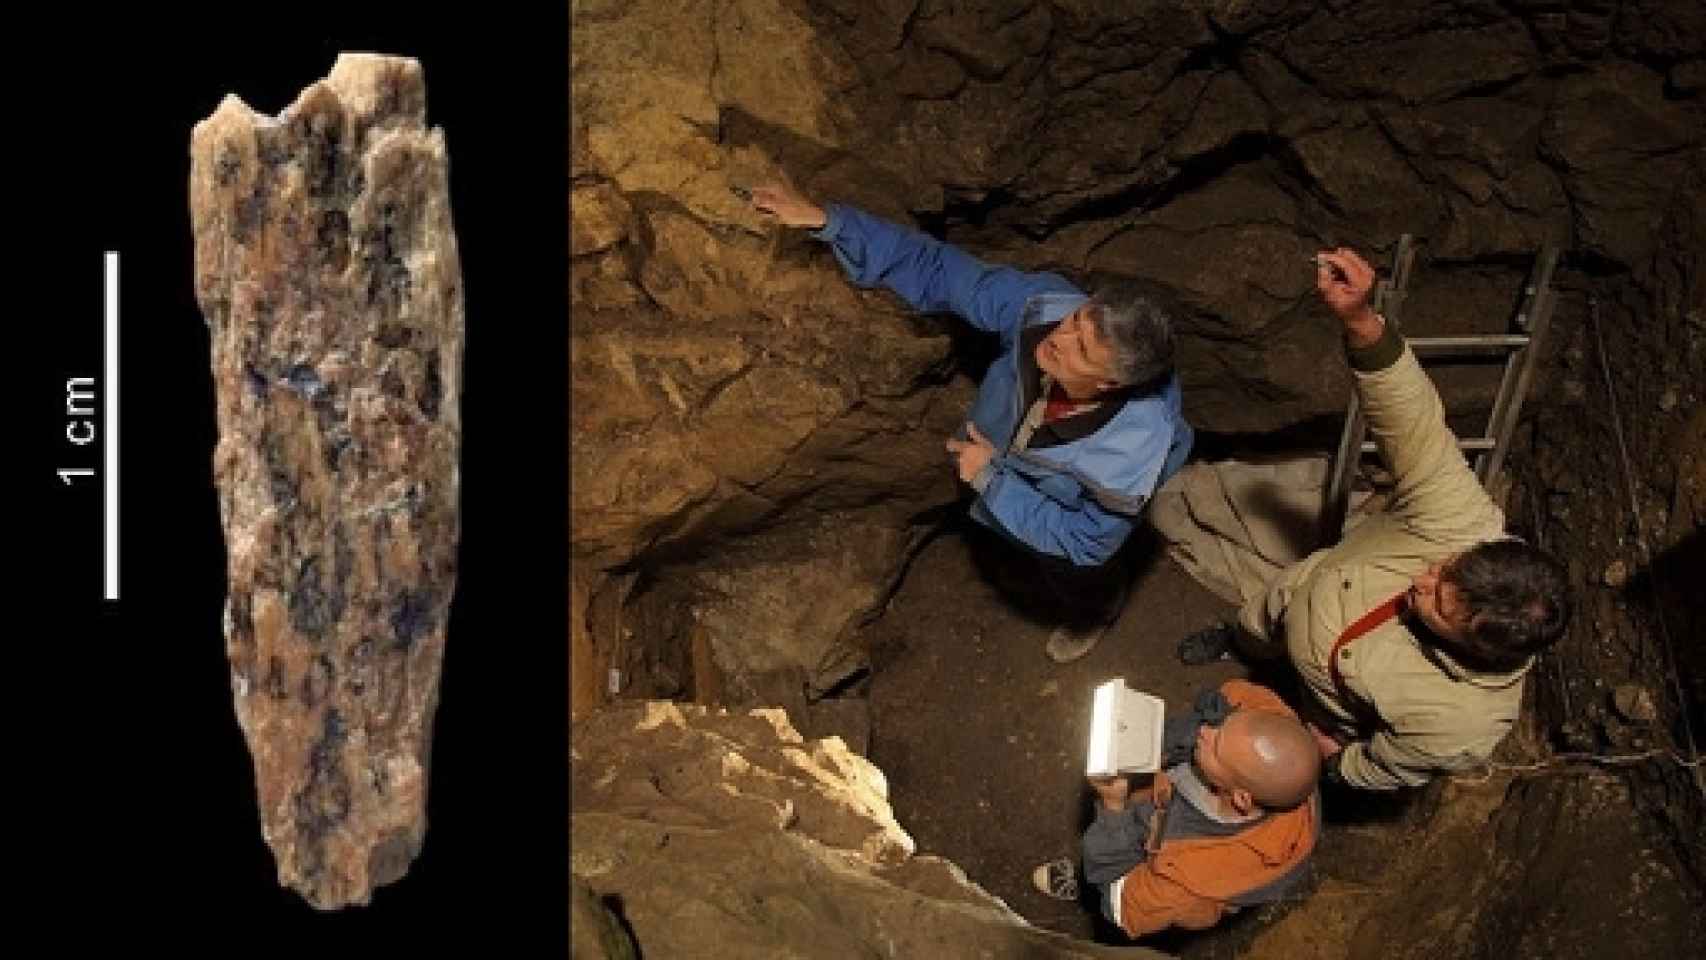 Image: Descubiertos los restos de una hija de neandertal y denisovano